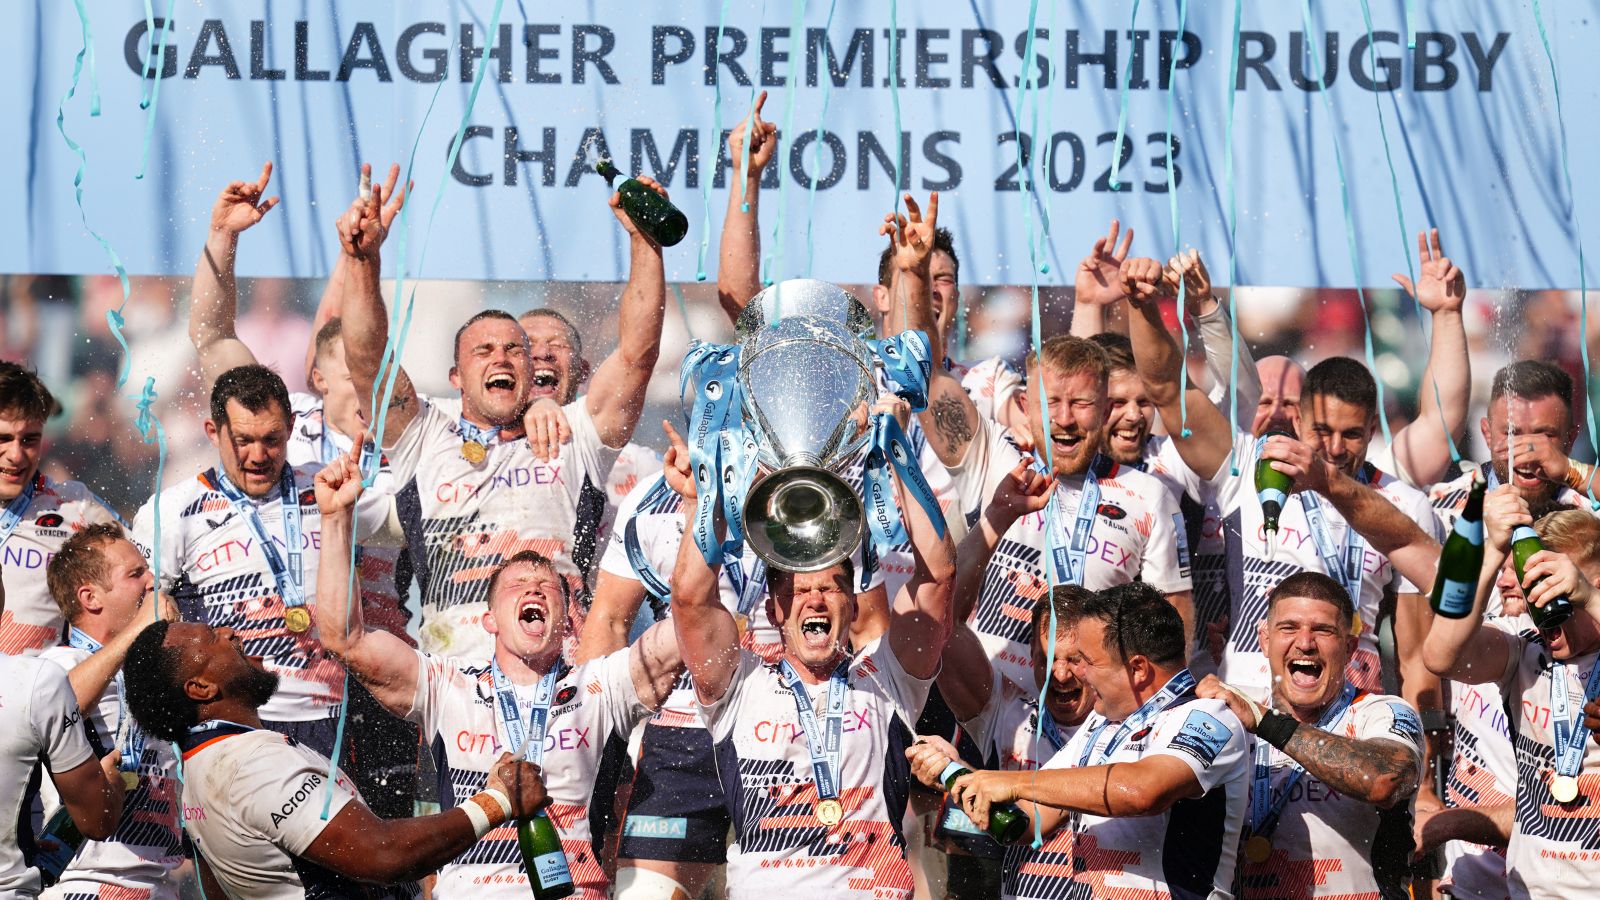 Premiership-rugby è il massimo campionato di rugby professionistico in Inghilterra e Galles. È composto da 12 squadre provenienti da diverse città e regioni del paese. La stagione si svolge da settembre a maggio e culmina con la finale per il titolo di campione. Il campionato è noto per la sua competitività e per la presenza di alcuni dei migliori giocatori di 